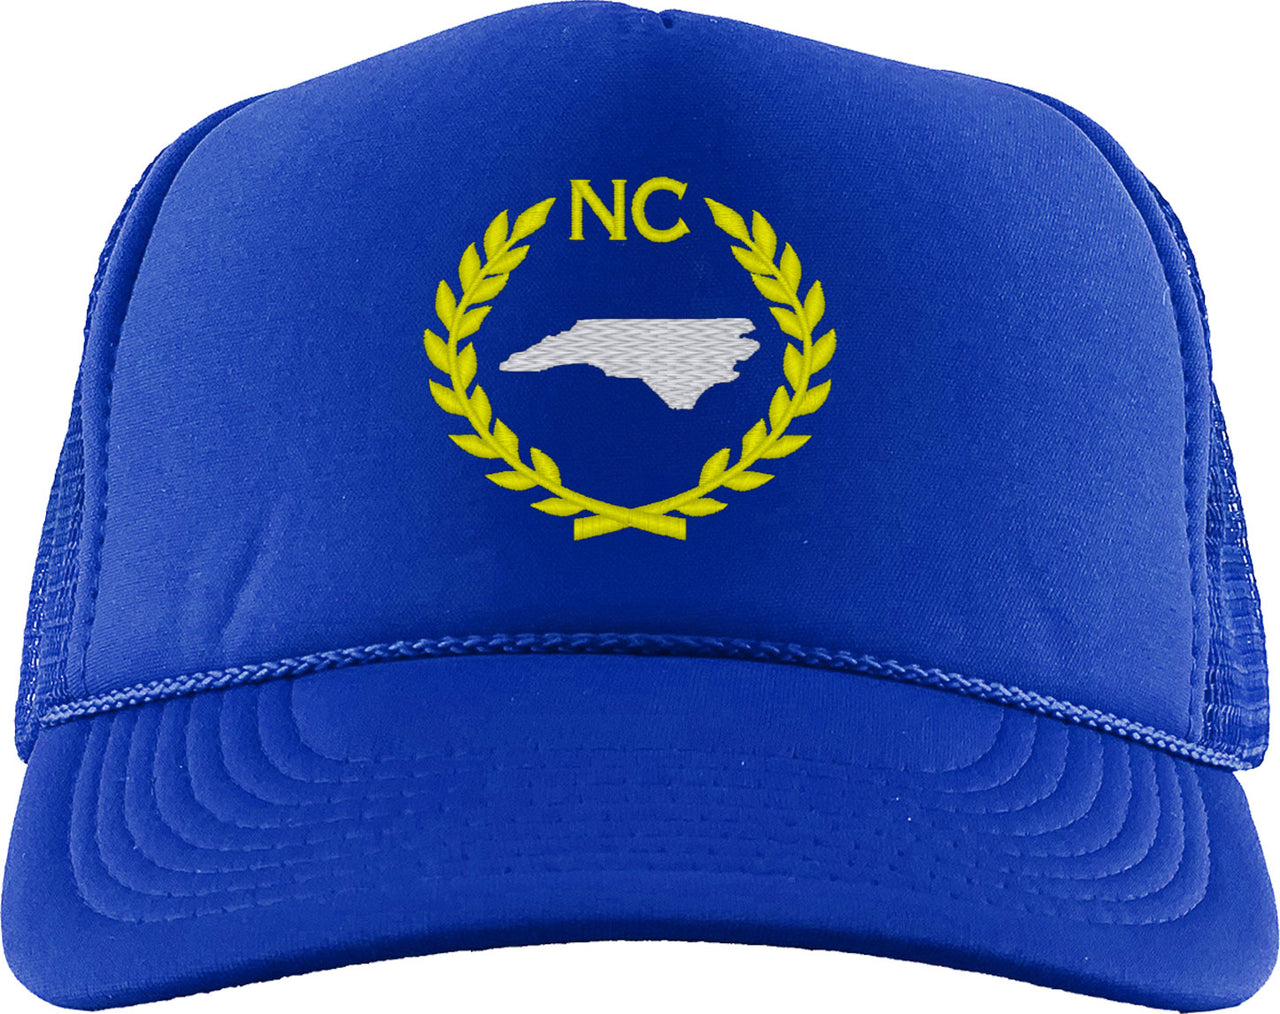 North Carolina State Foam Trucker Hat